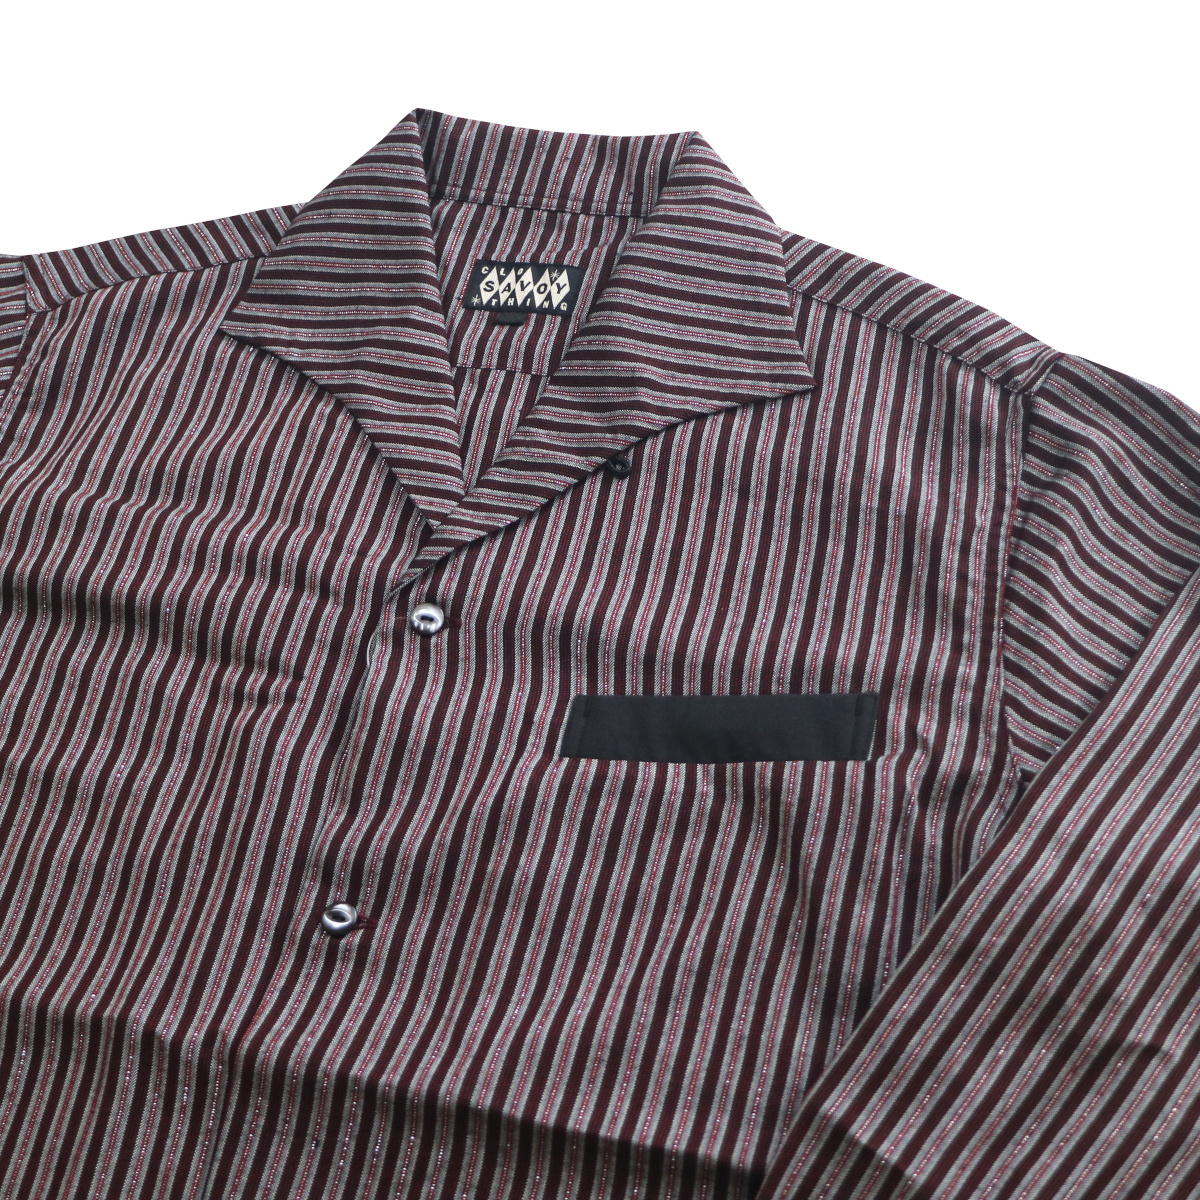 シャツ 長袖 メンズ ロカビリーファッション Lame Stripe Italian Shirts サイズL ブランド SAVOY CLOTHING_画像4